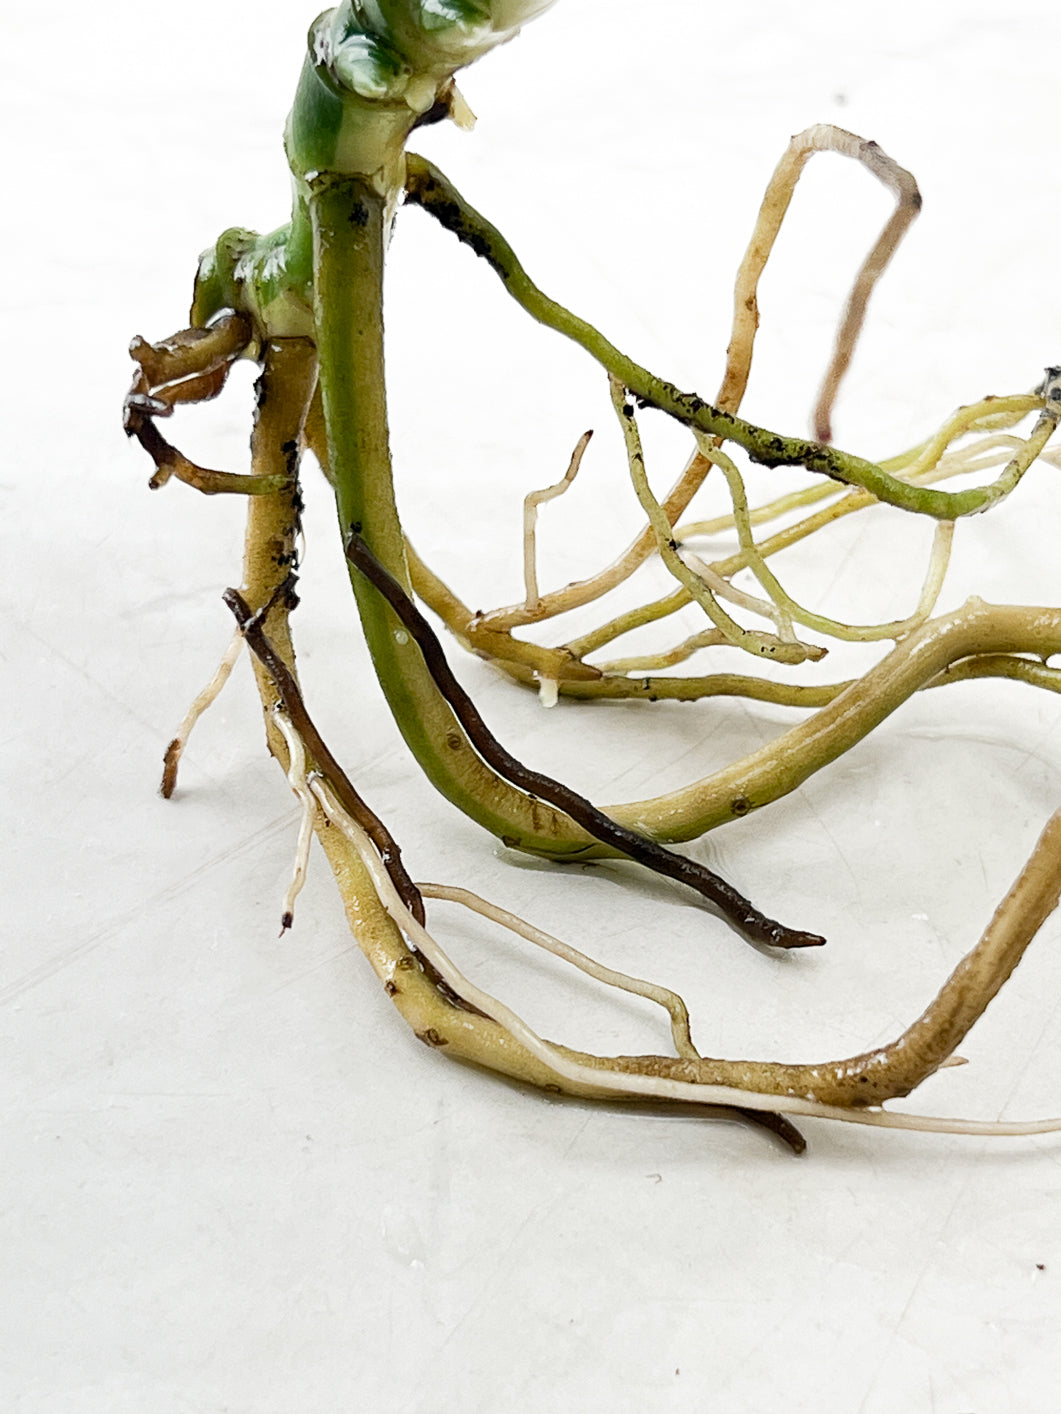 Monstera Adansonii Variegated 3 leaves rooting multiple nodes